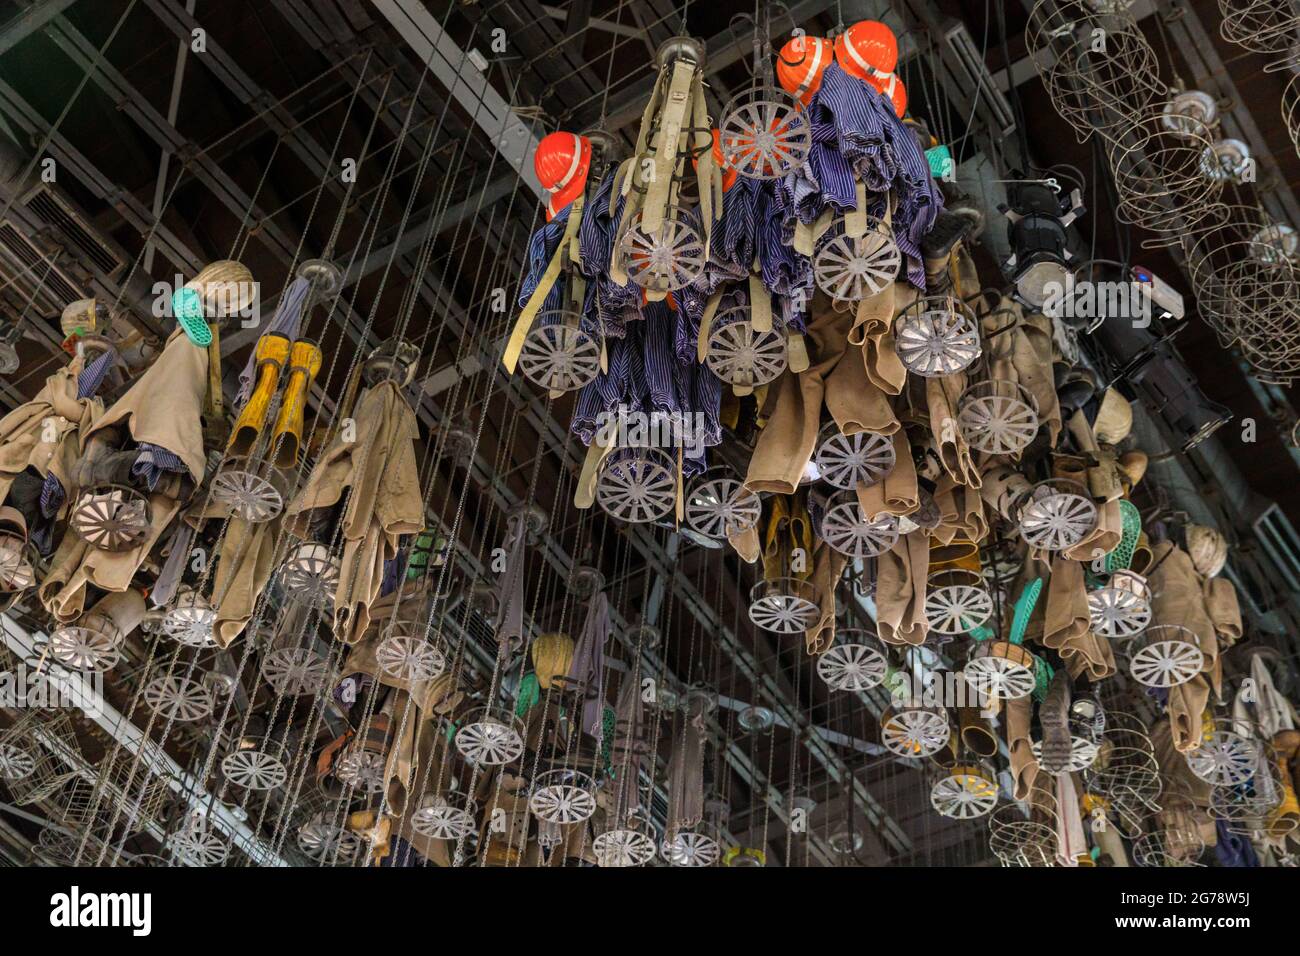 Armadietto per i minatori di carbone, spogliatoio con cestini che immagazzinano i vestiti e gli effetti personali da lavoro, collieria Zeche Zollern, distretto Ruhr, Germania Foto Stock